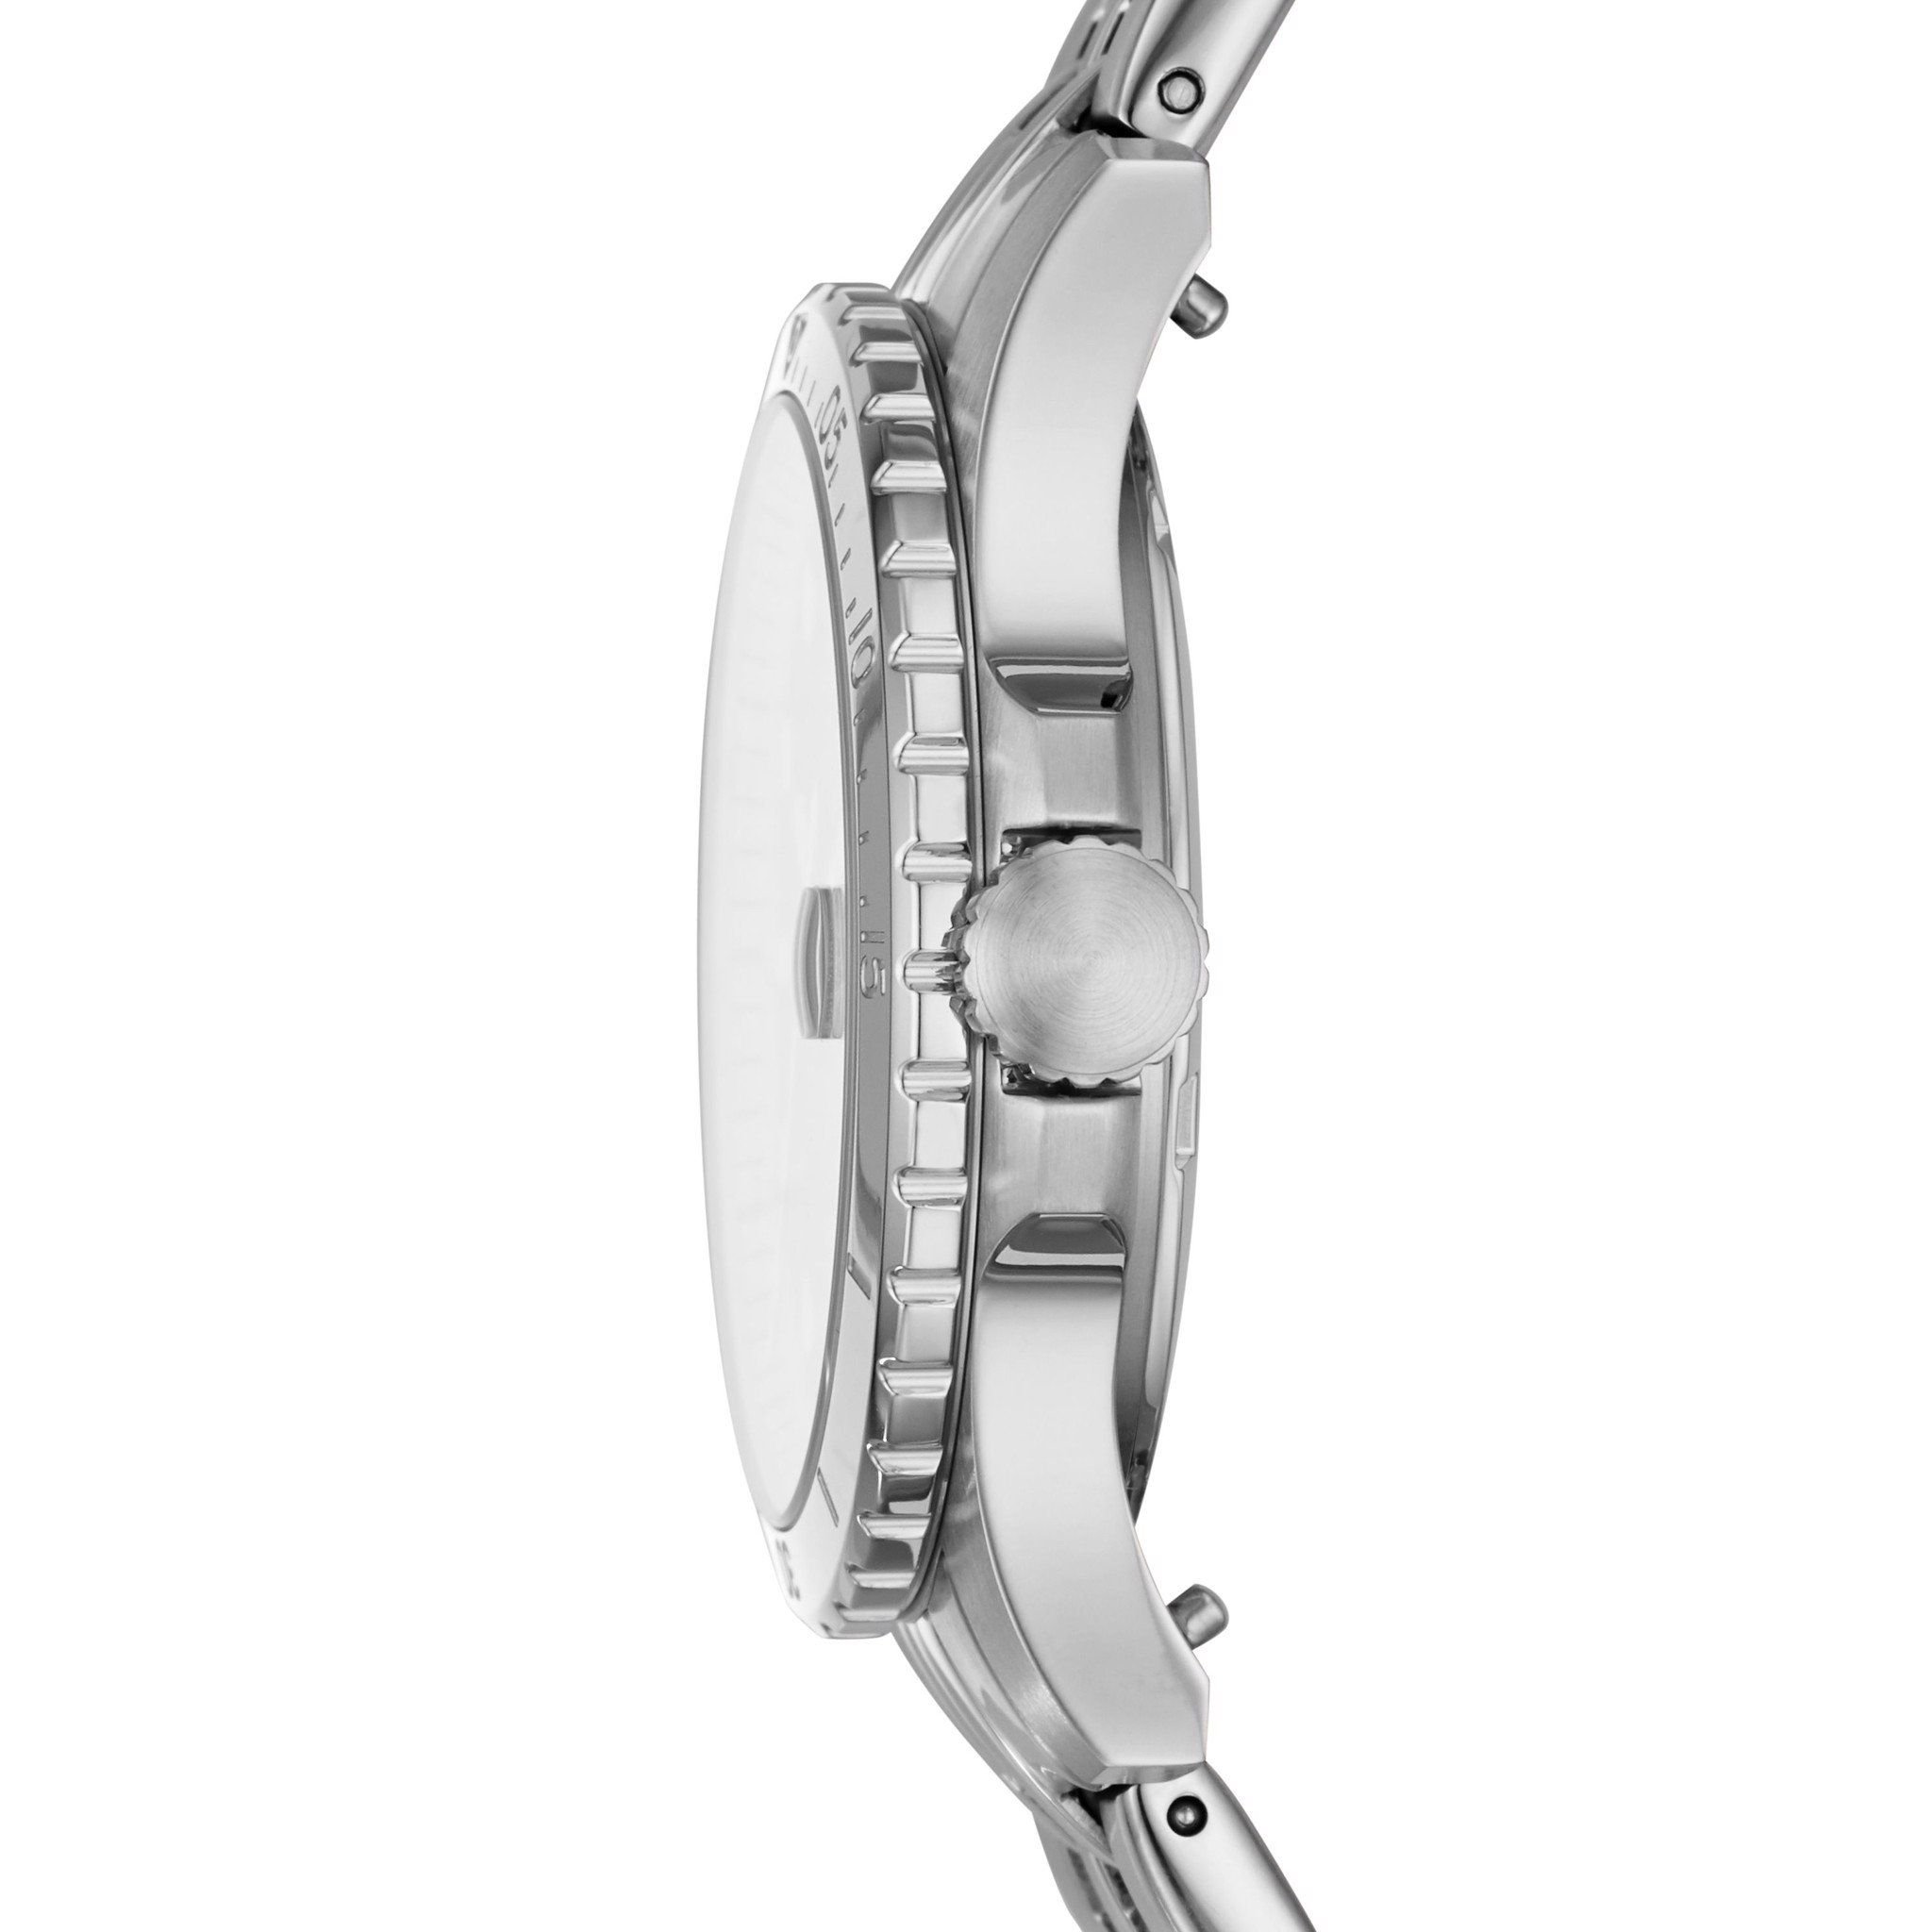  Đồng hồ nữ Fossil FB-01 dây thép không gỉ ES4744 - màu bạc 